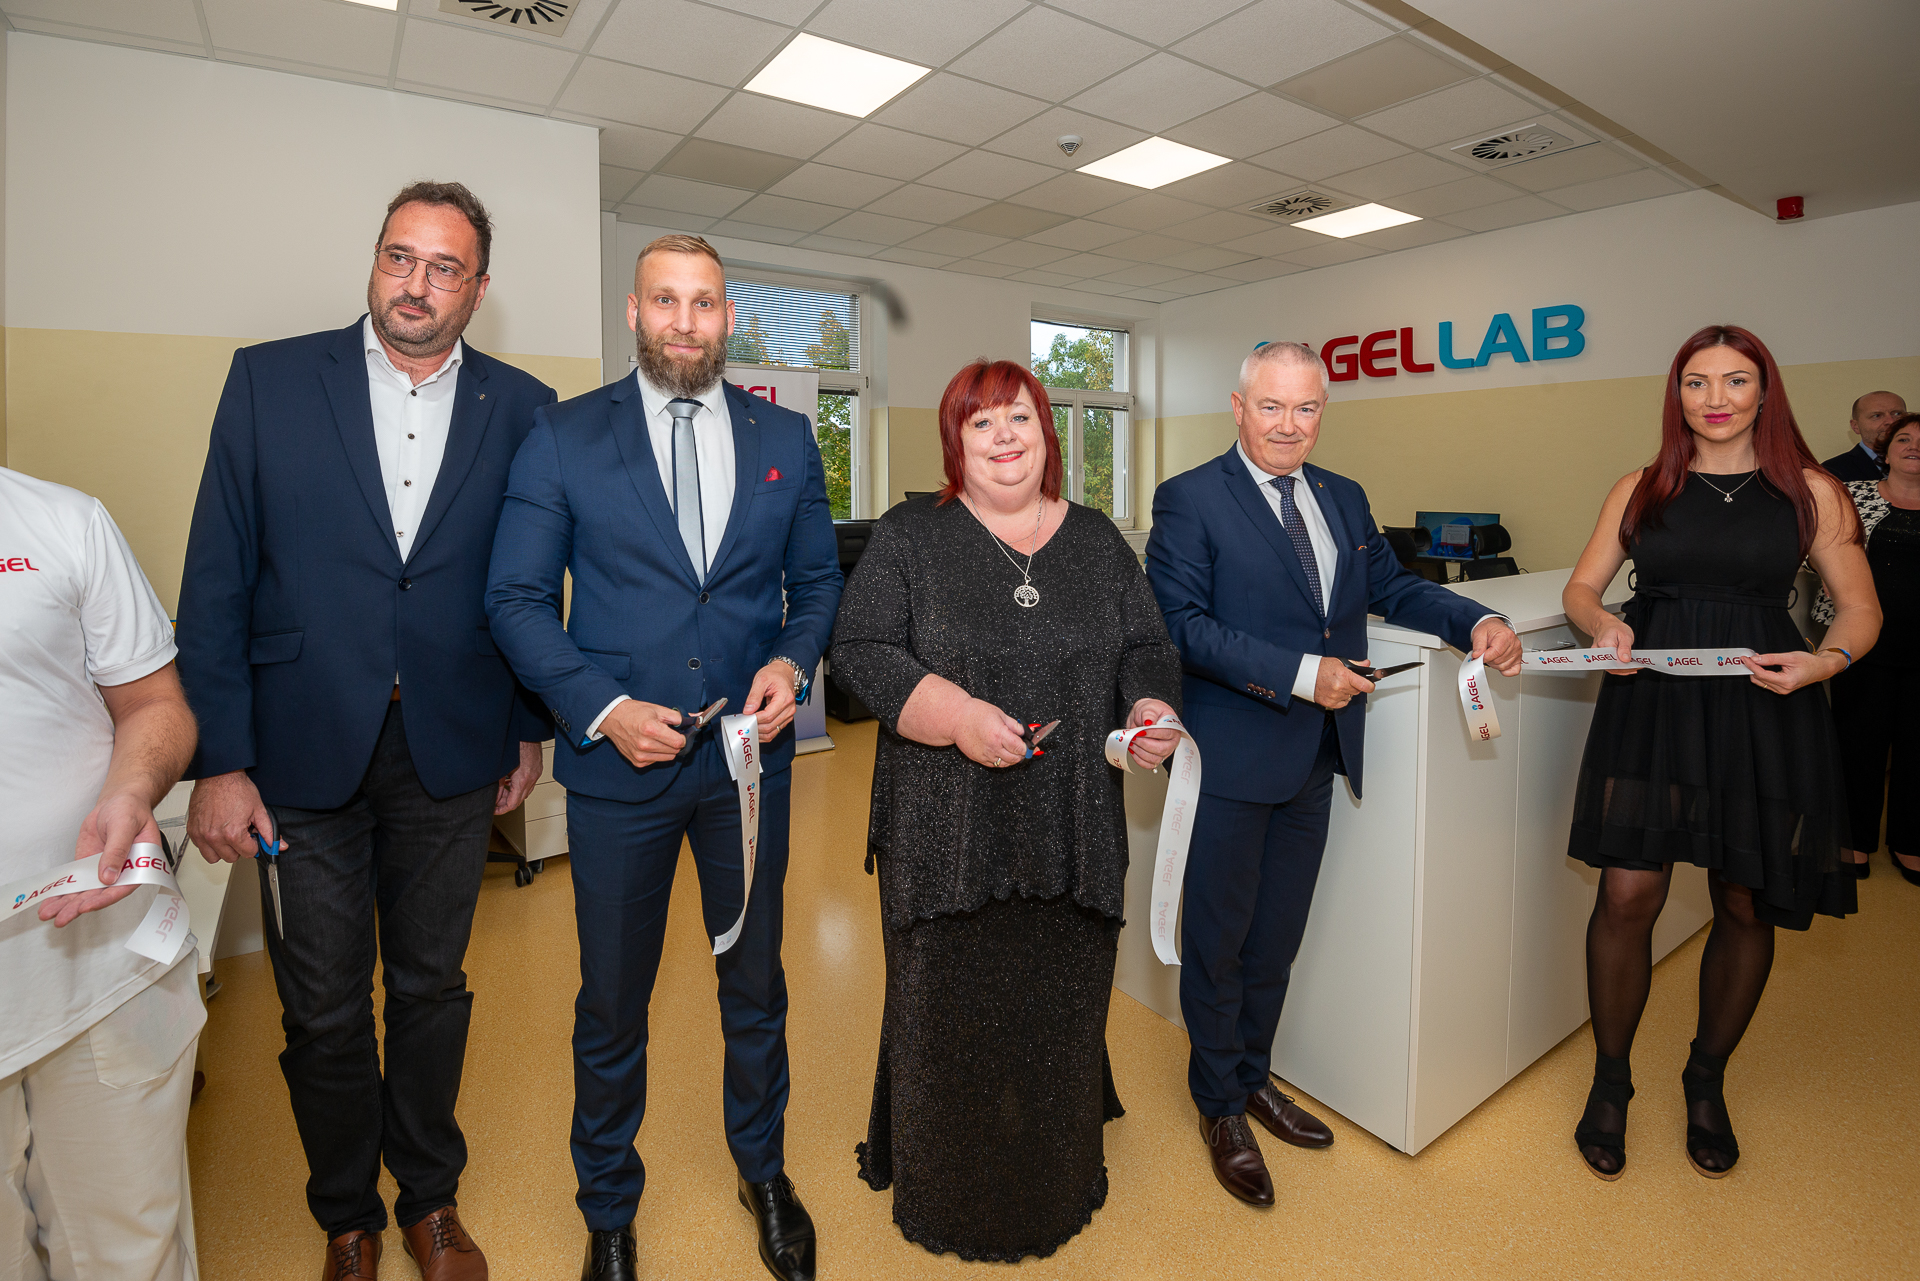 Společnost Dopravní zdravotnictví a.s., člen skupiny AGEL, slavnostně otevřela nové laboratoře AGELLAB v Office parku NAGANO.